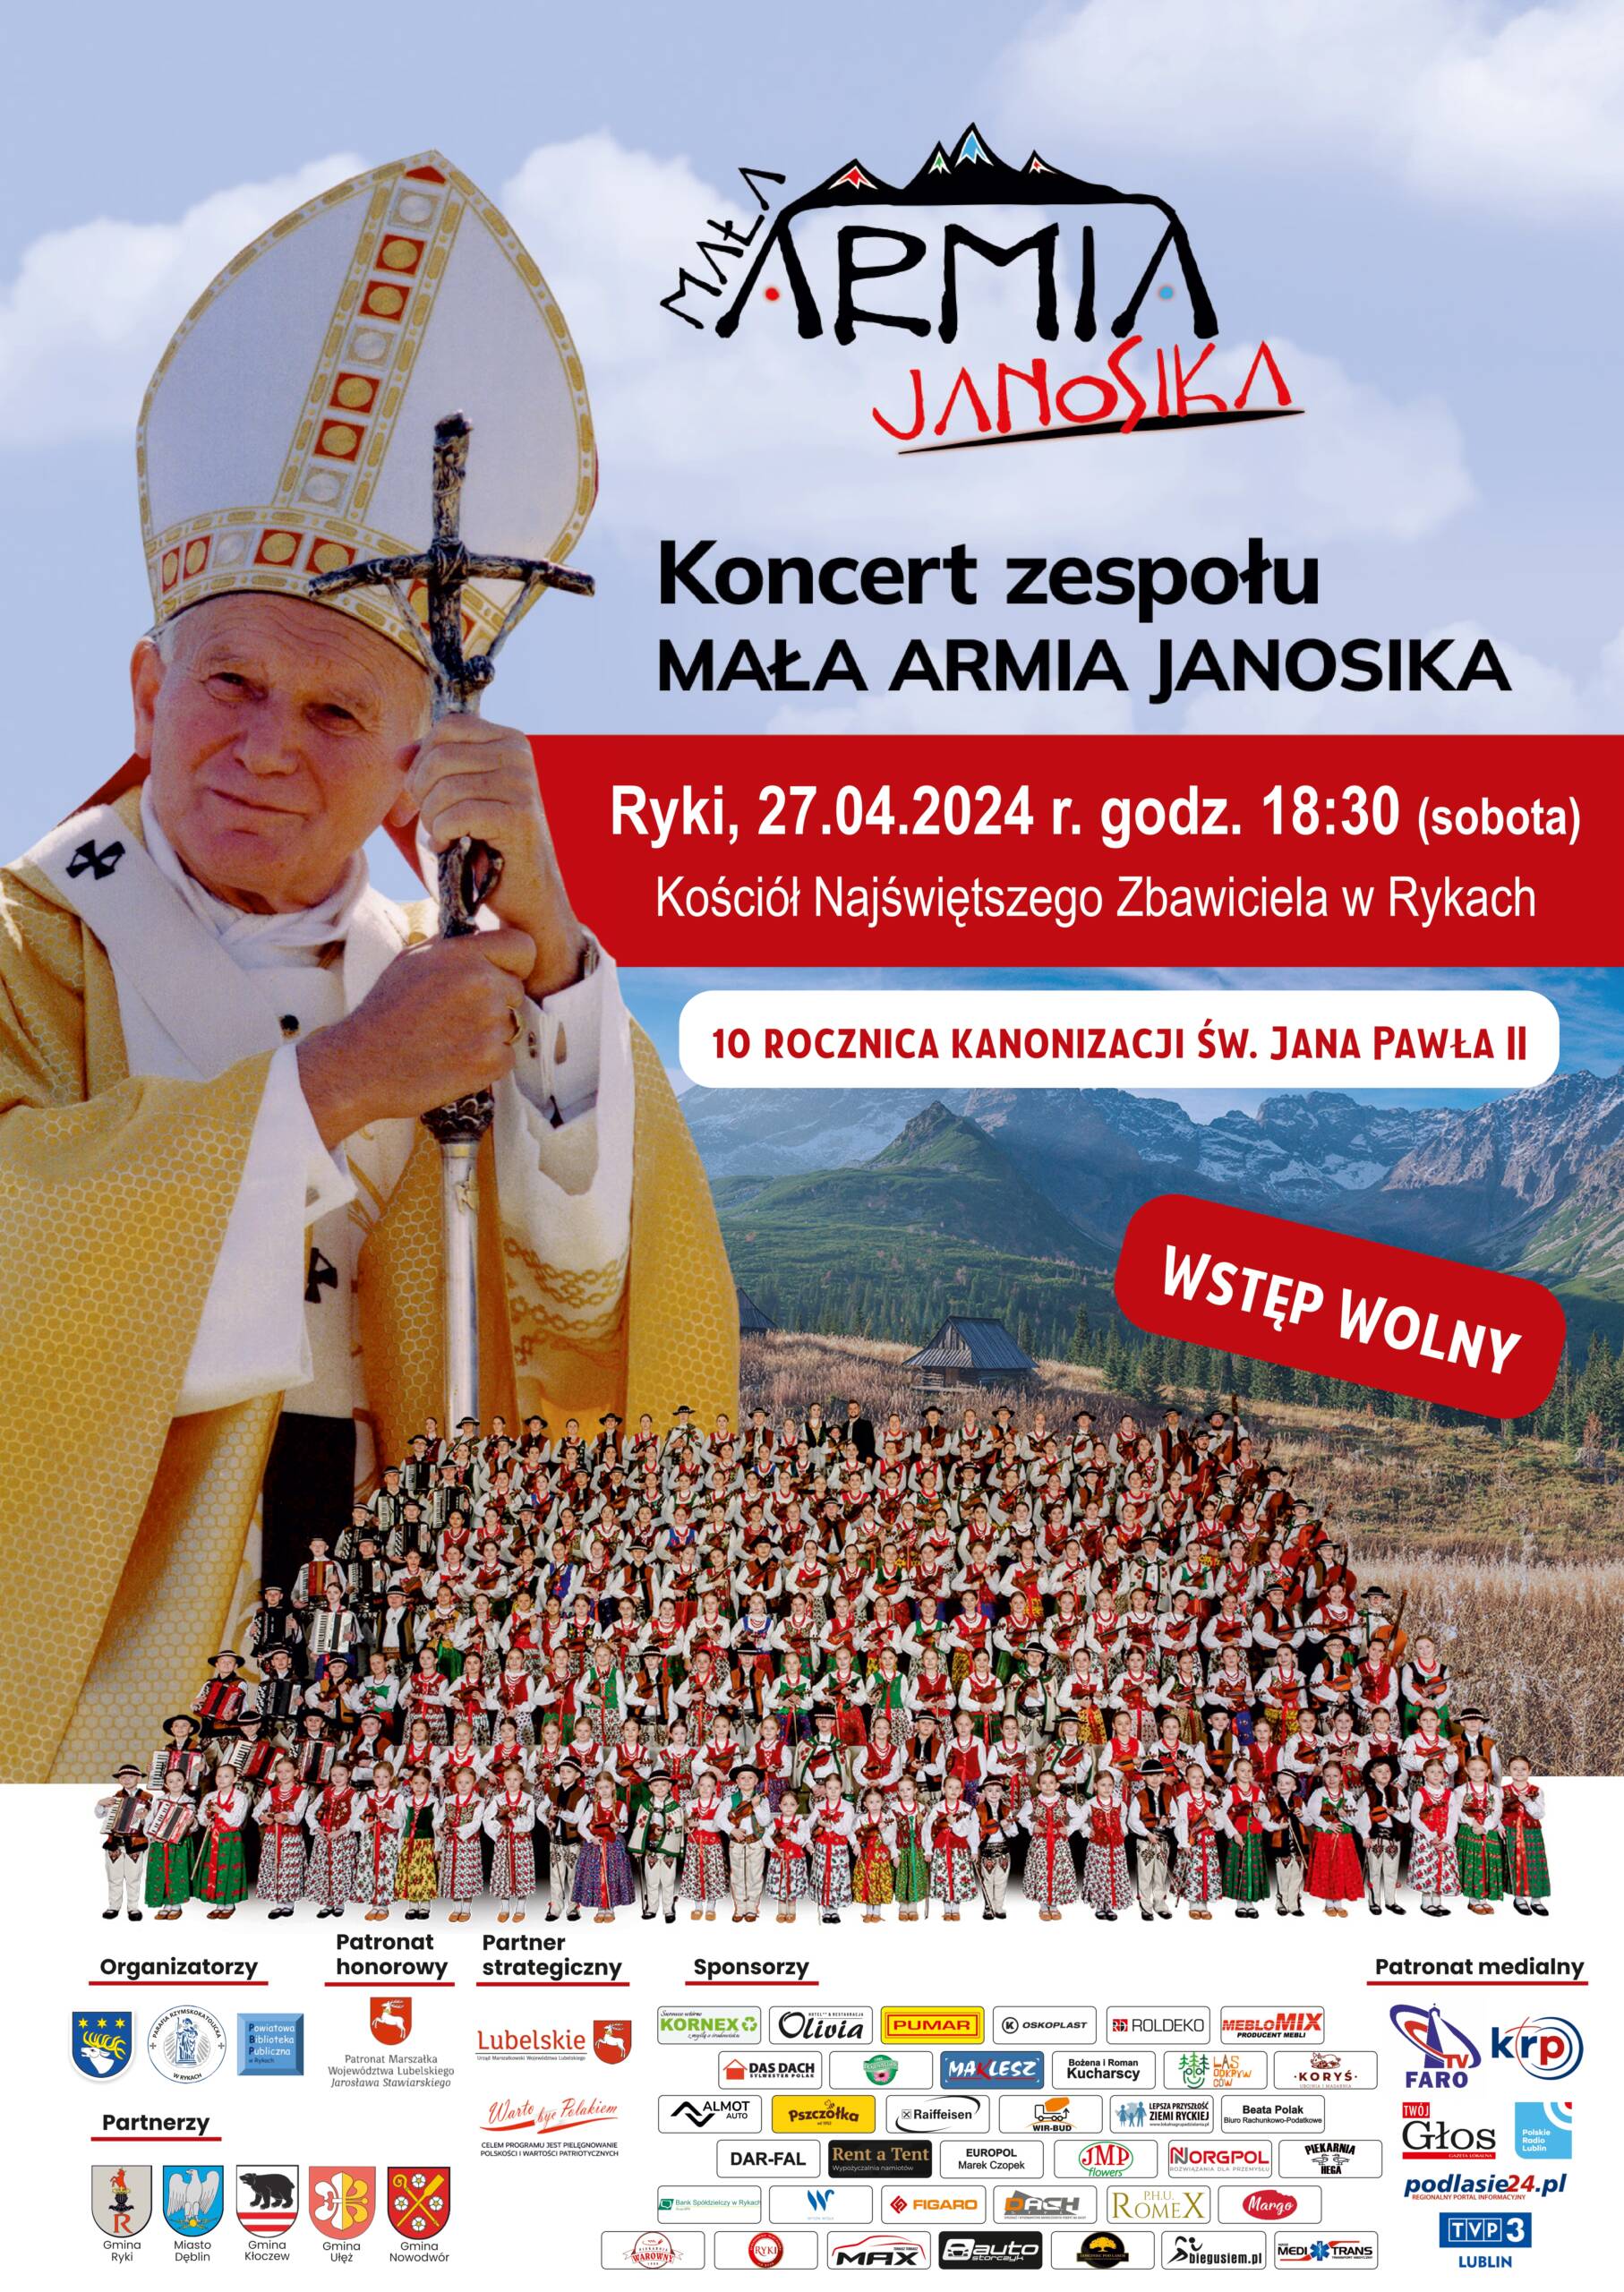 Plakat Mala Armia Janosika scaled